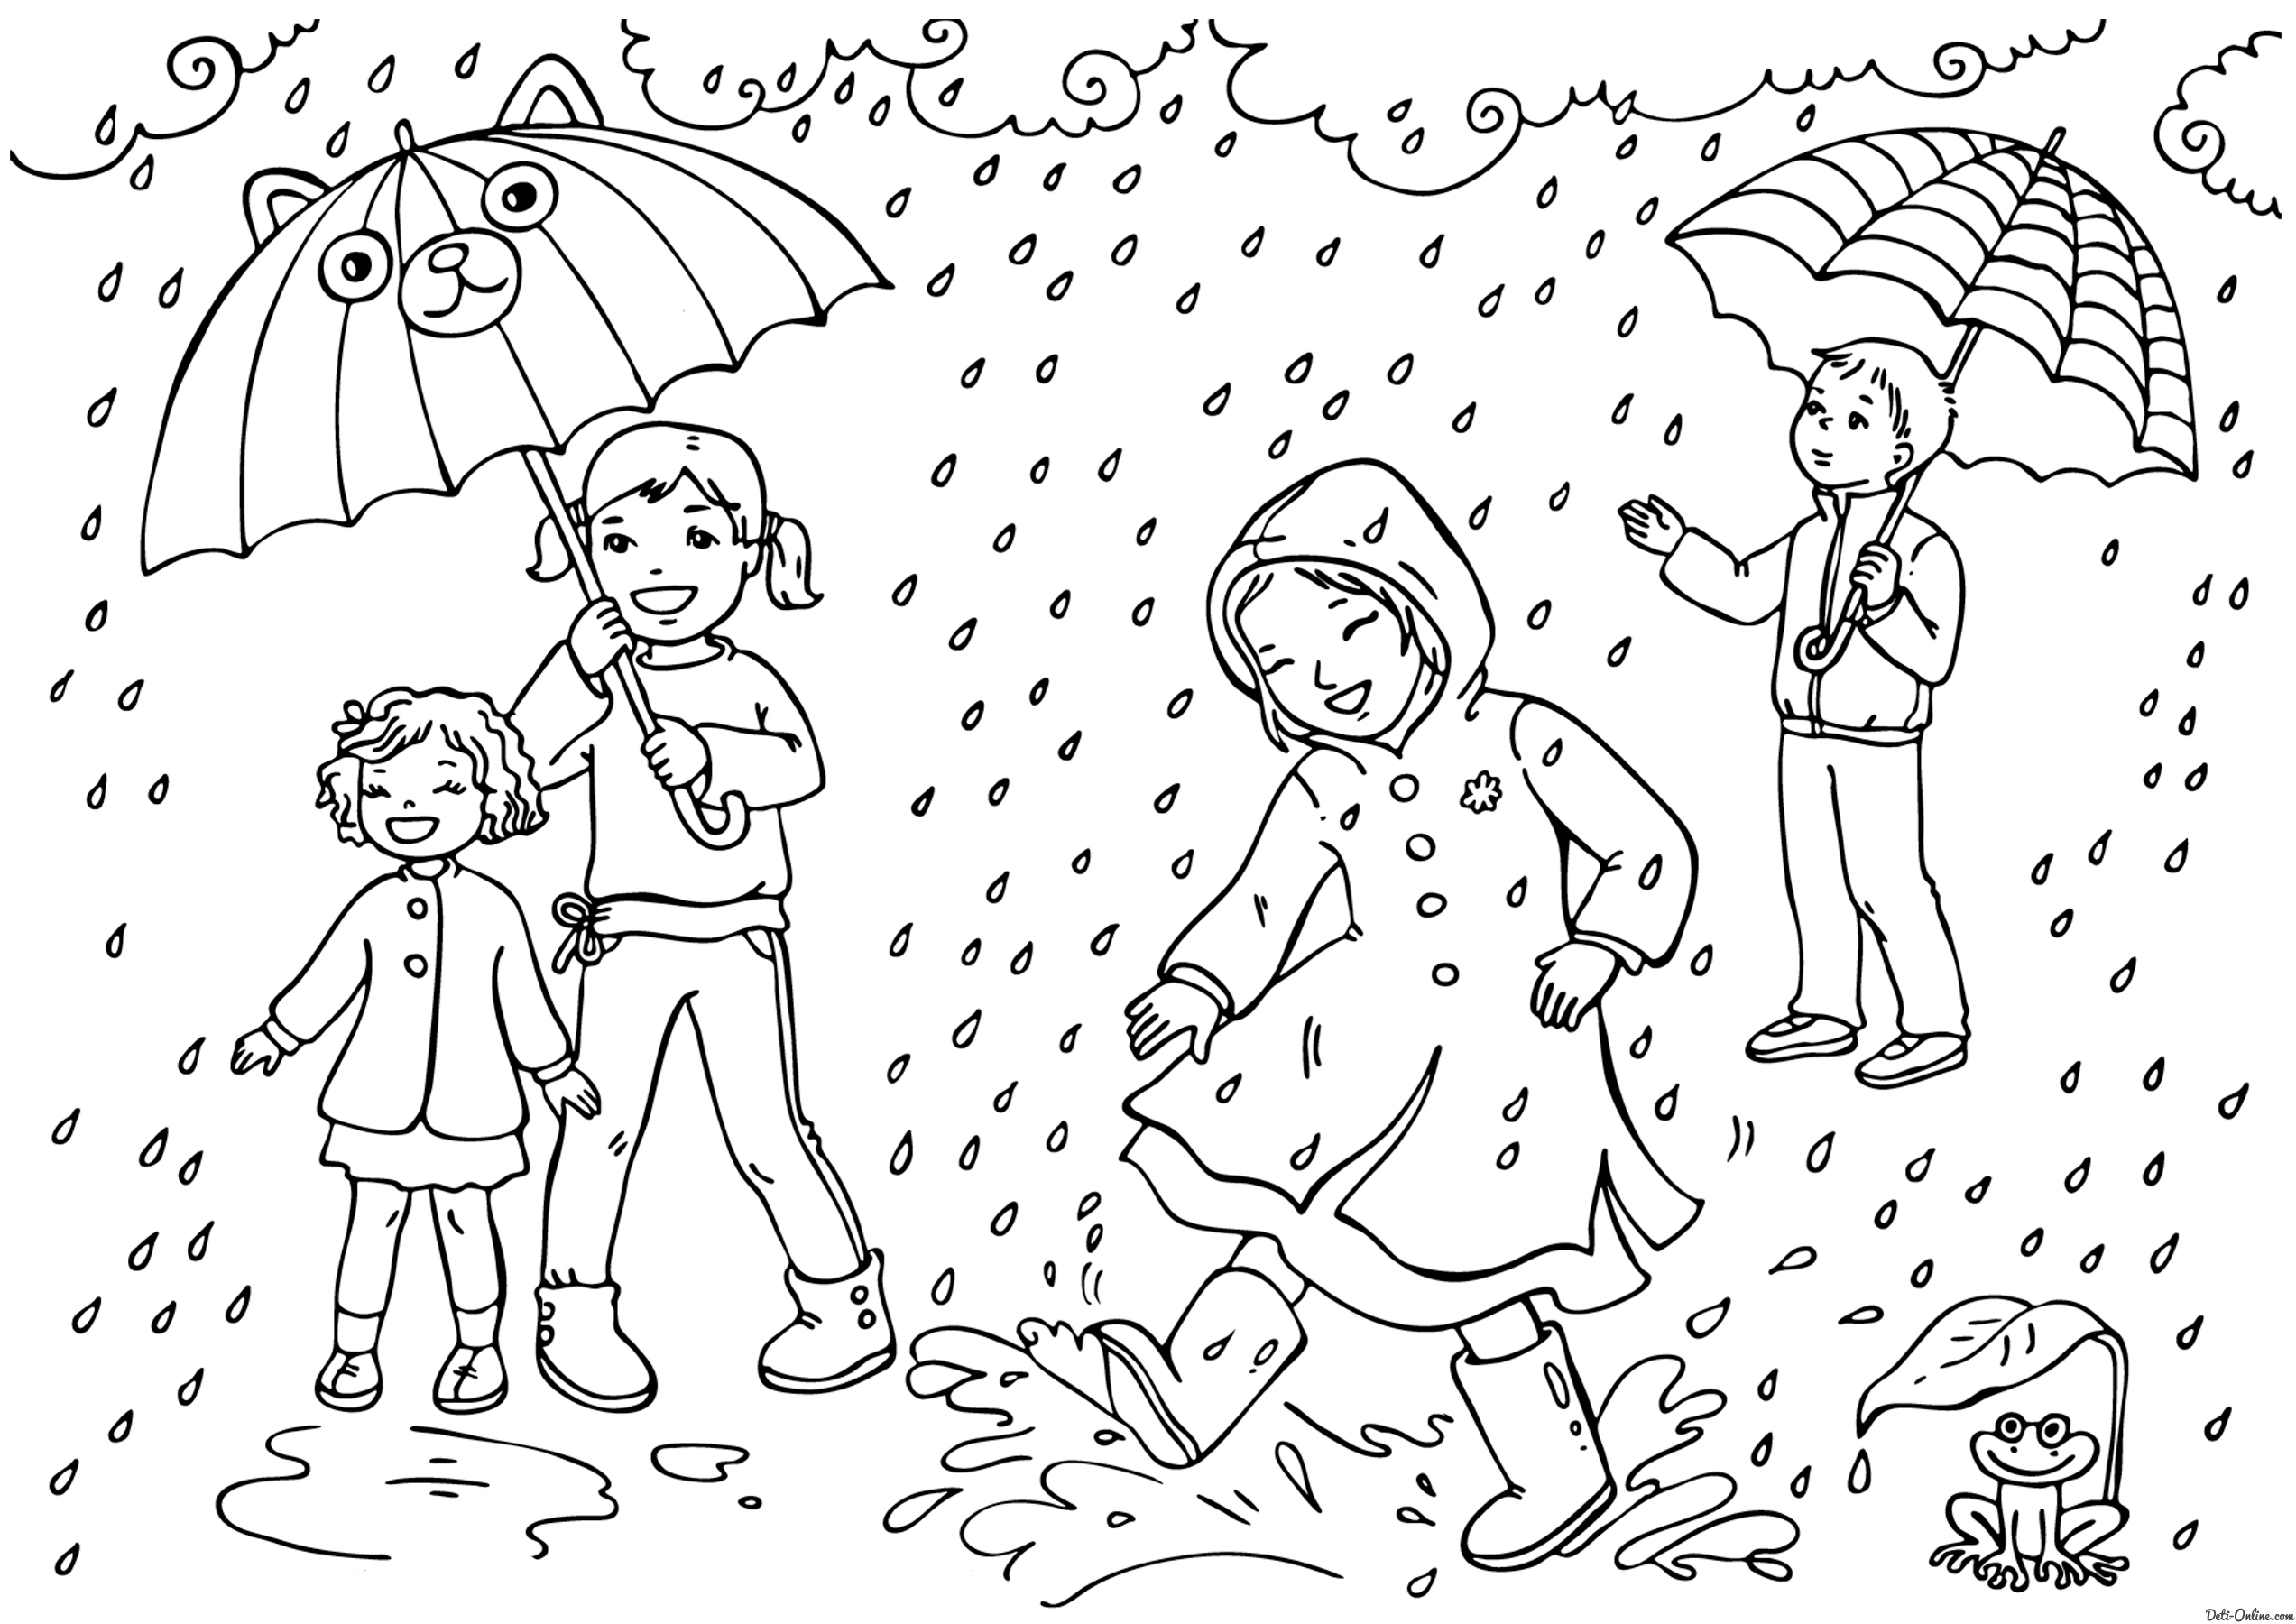 Раскраски для детей дождь. Скачать бесплатные раскраски для детей. Раскраски детские с окружающим миром. Раскраски для детей с феями.  Бесплатные детские раскраски с дождиком.